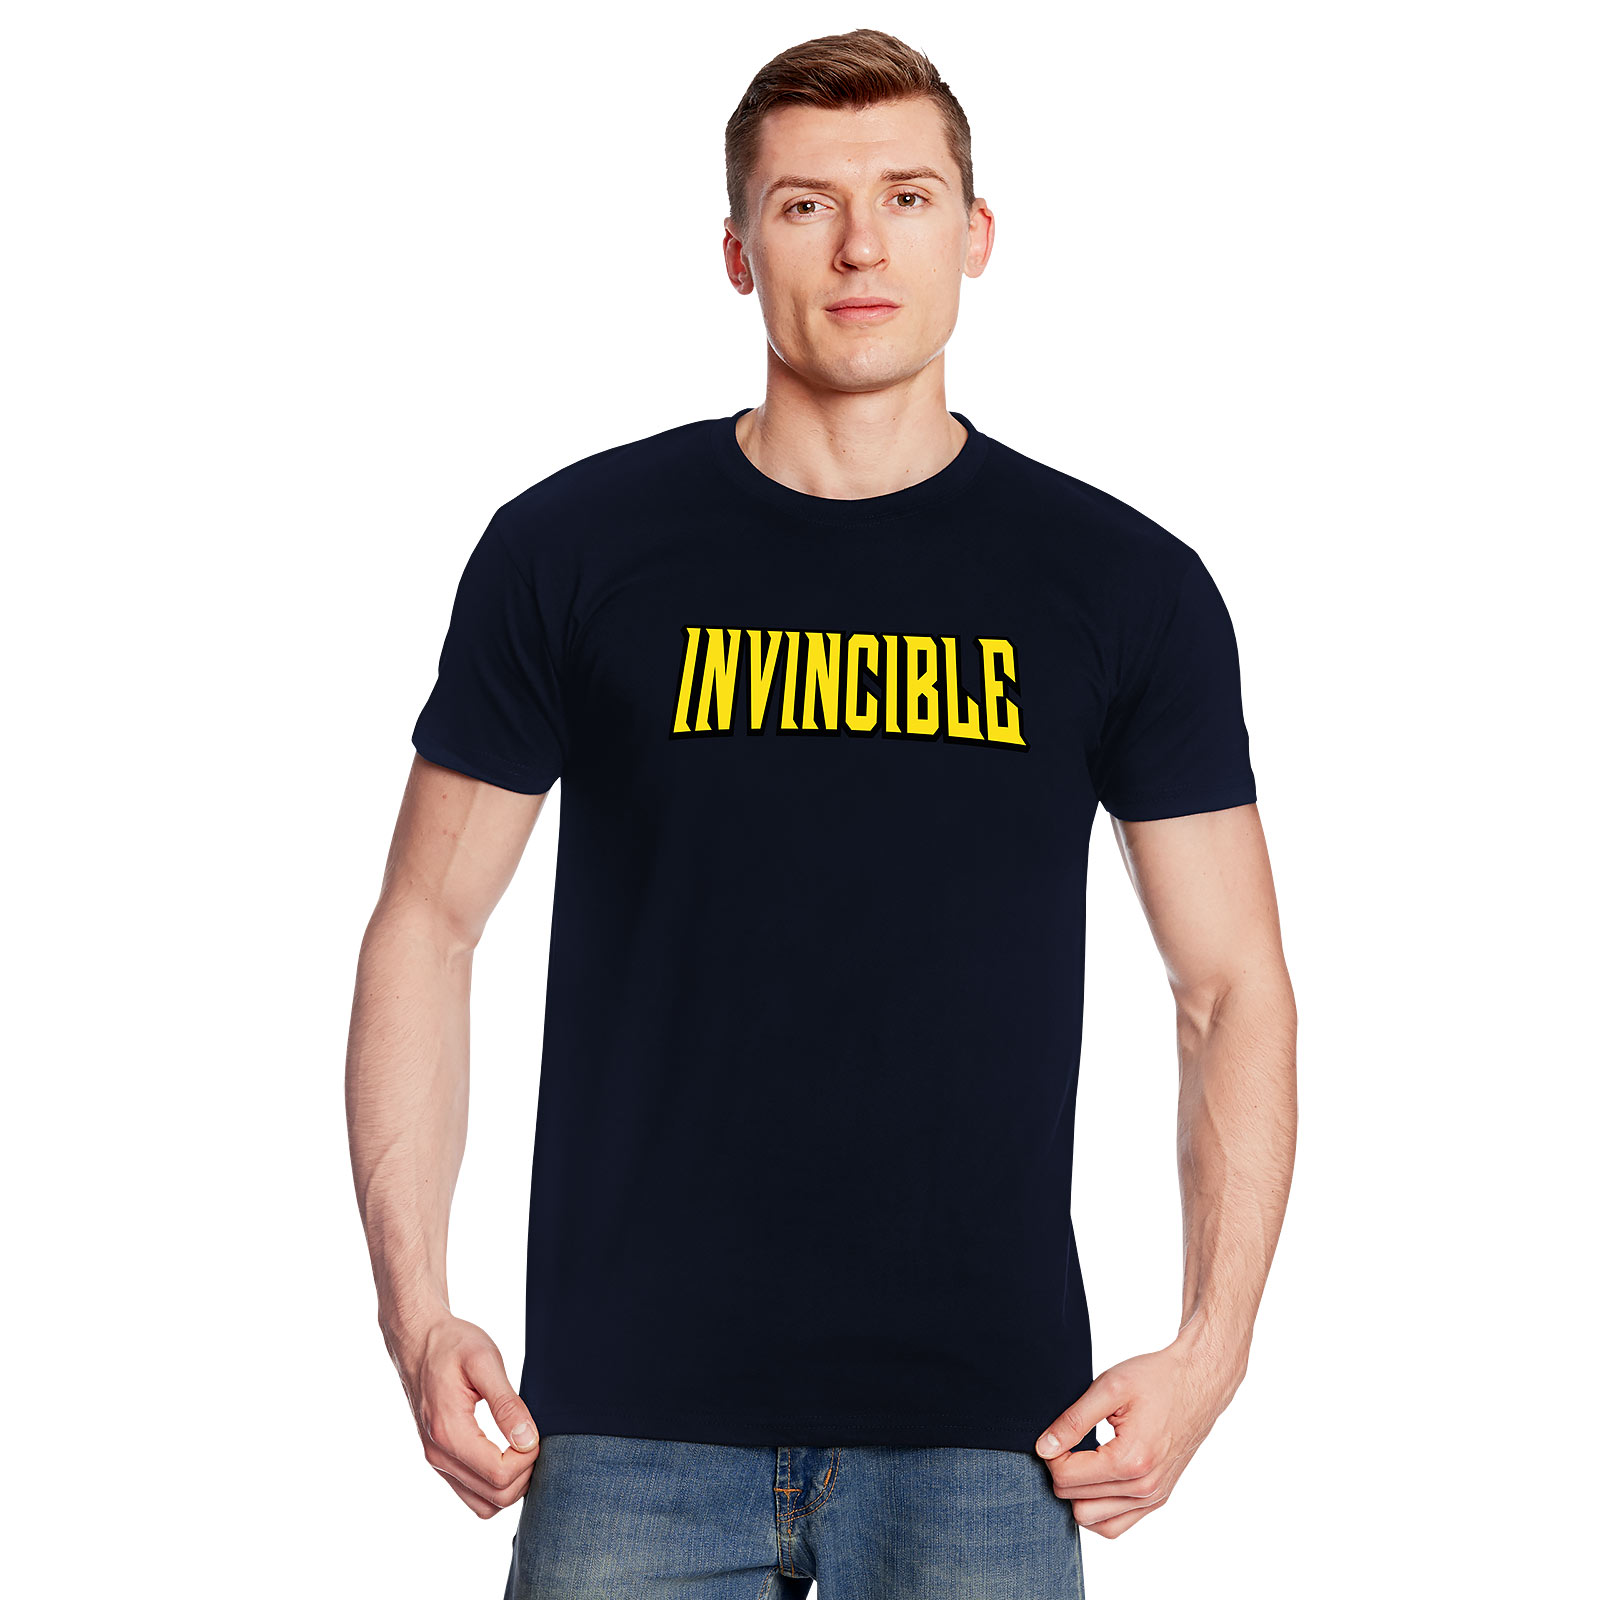 Logo T-Shirt voor Invincible Fans blauw